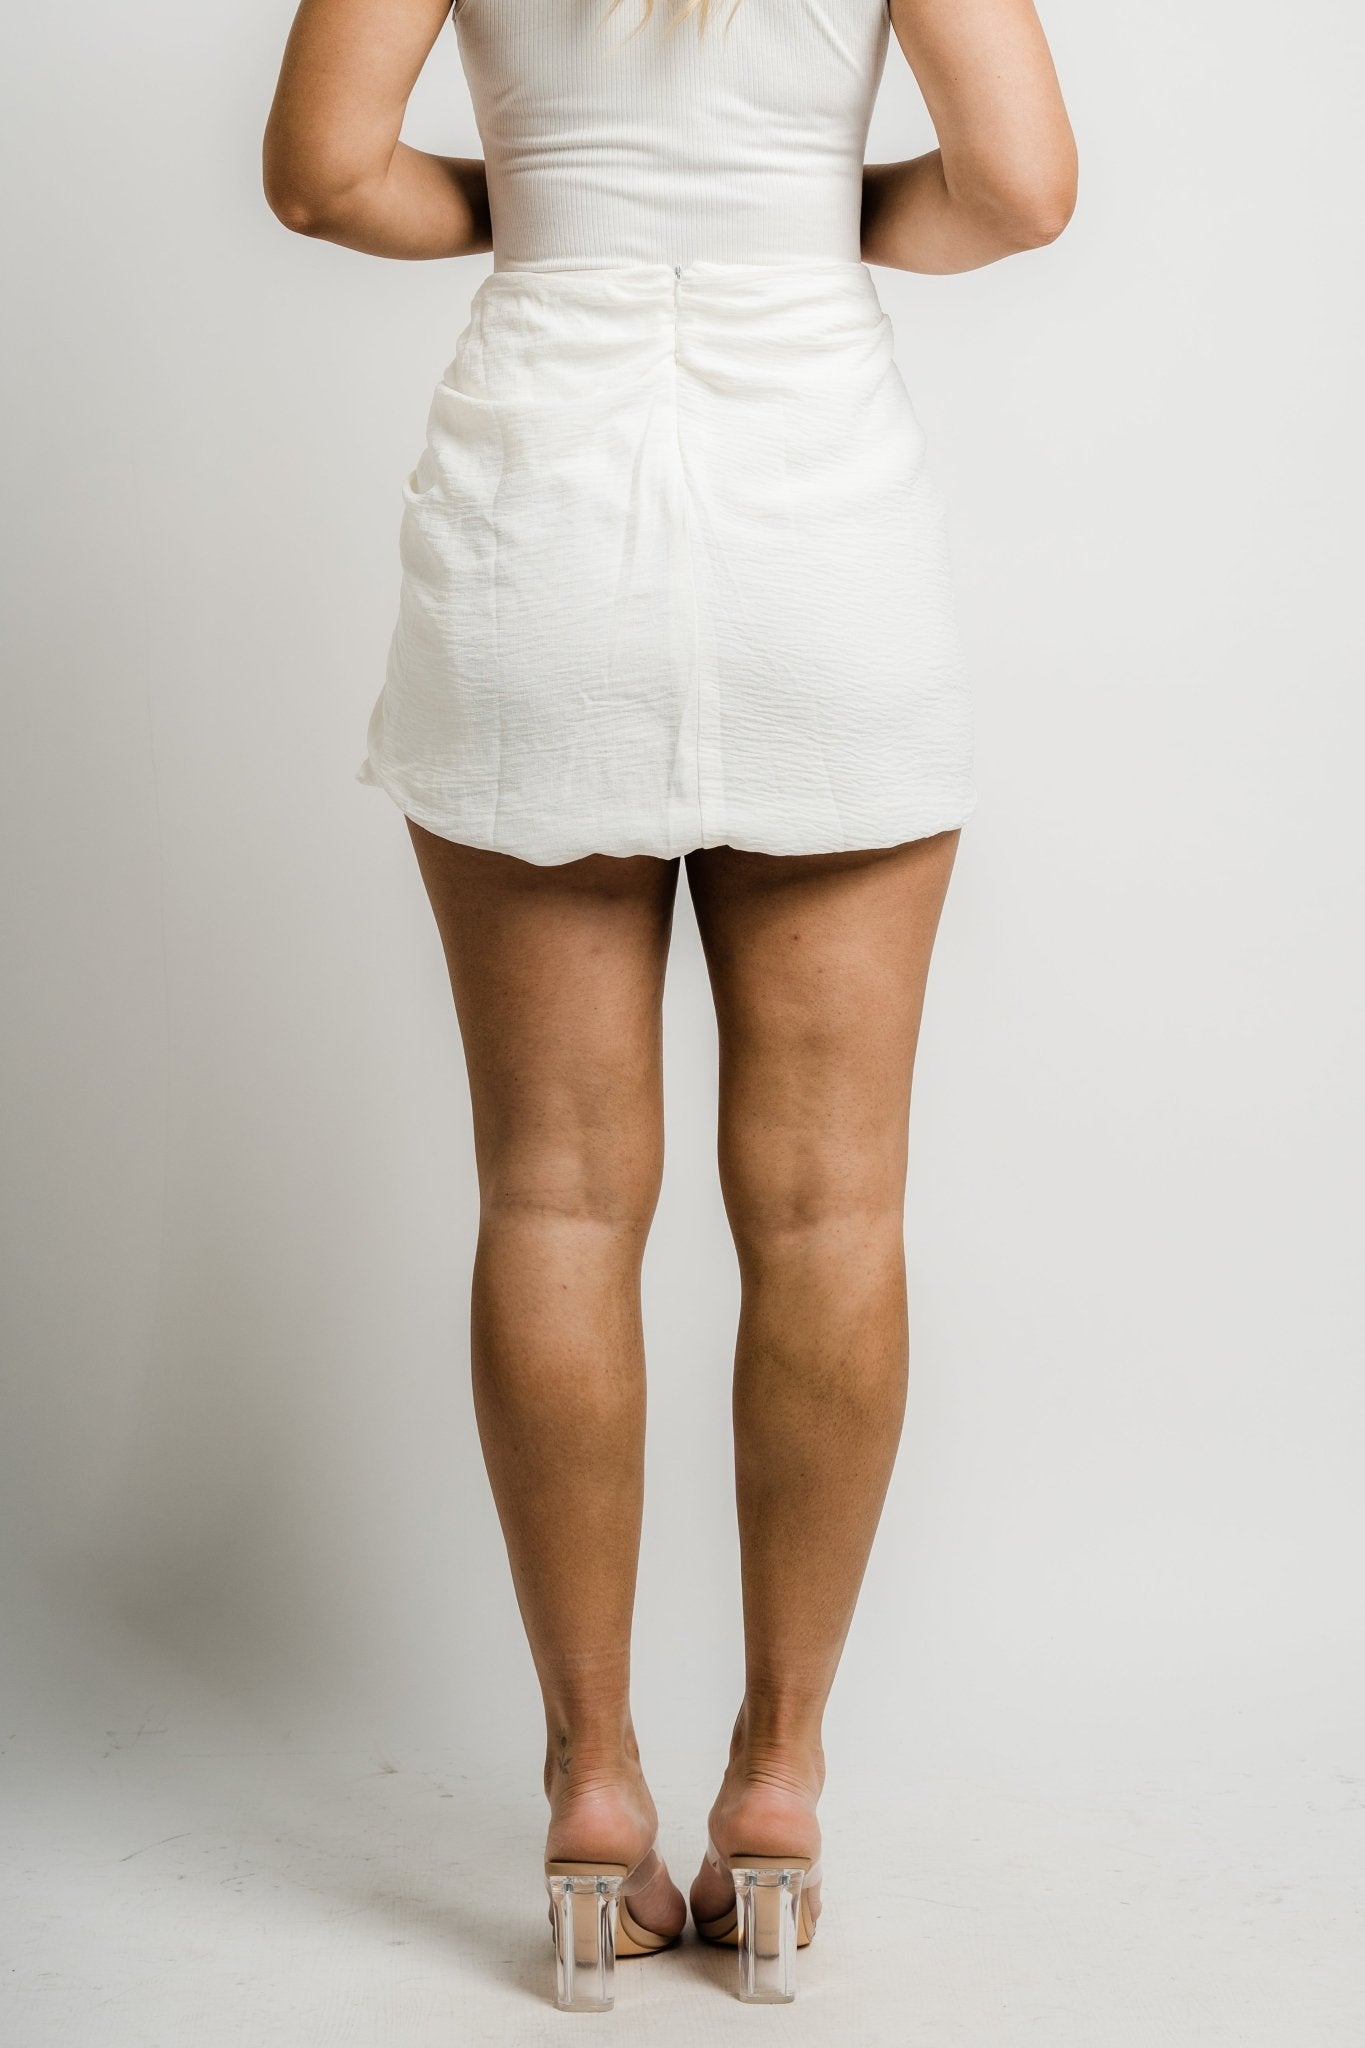 Sarong mini skirt white - Adorable Skirt - Unique Bridesmaid Ideas at Lush Fashion Lounge Boutique in Oklahoma